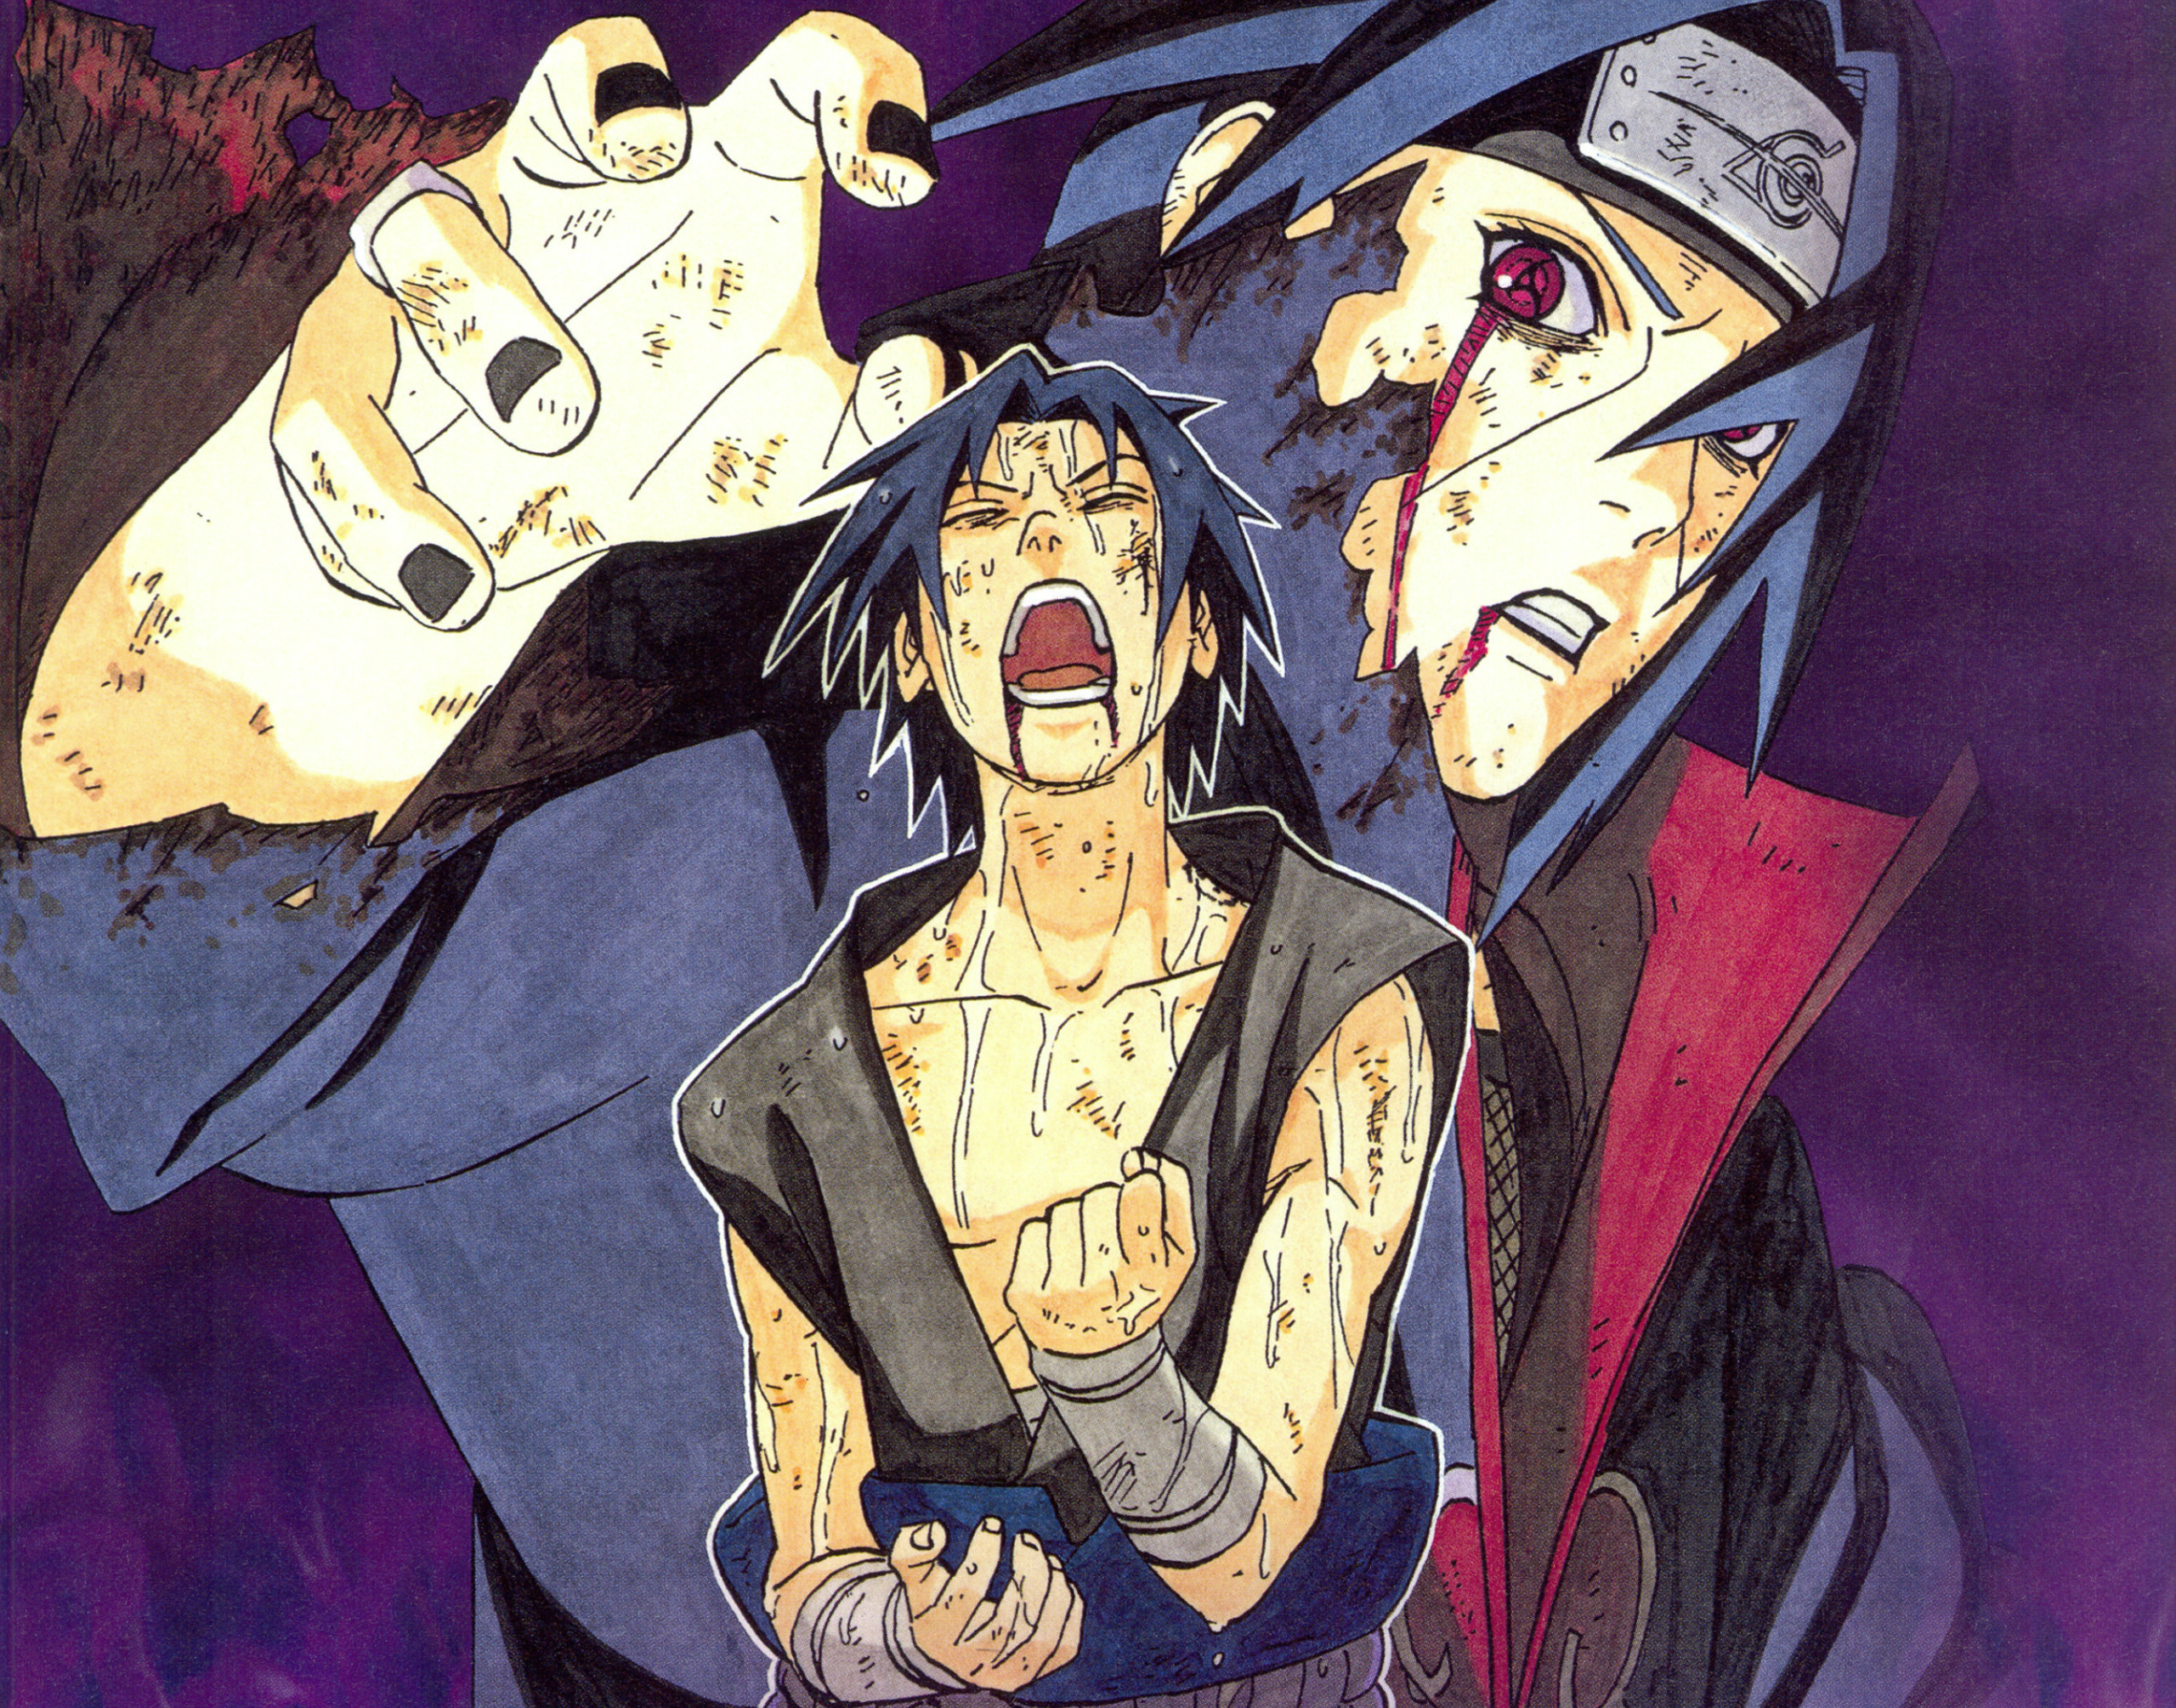 ненависть, боль, братья, Sasuke, Naruto, красные глаза, крик, поединок, sha...